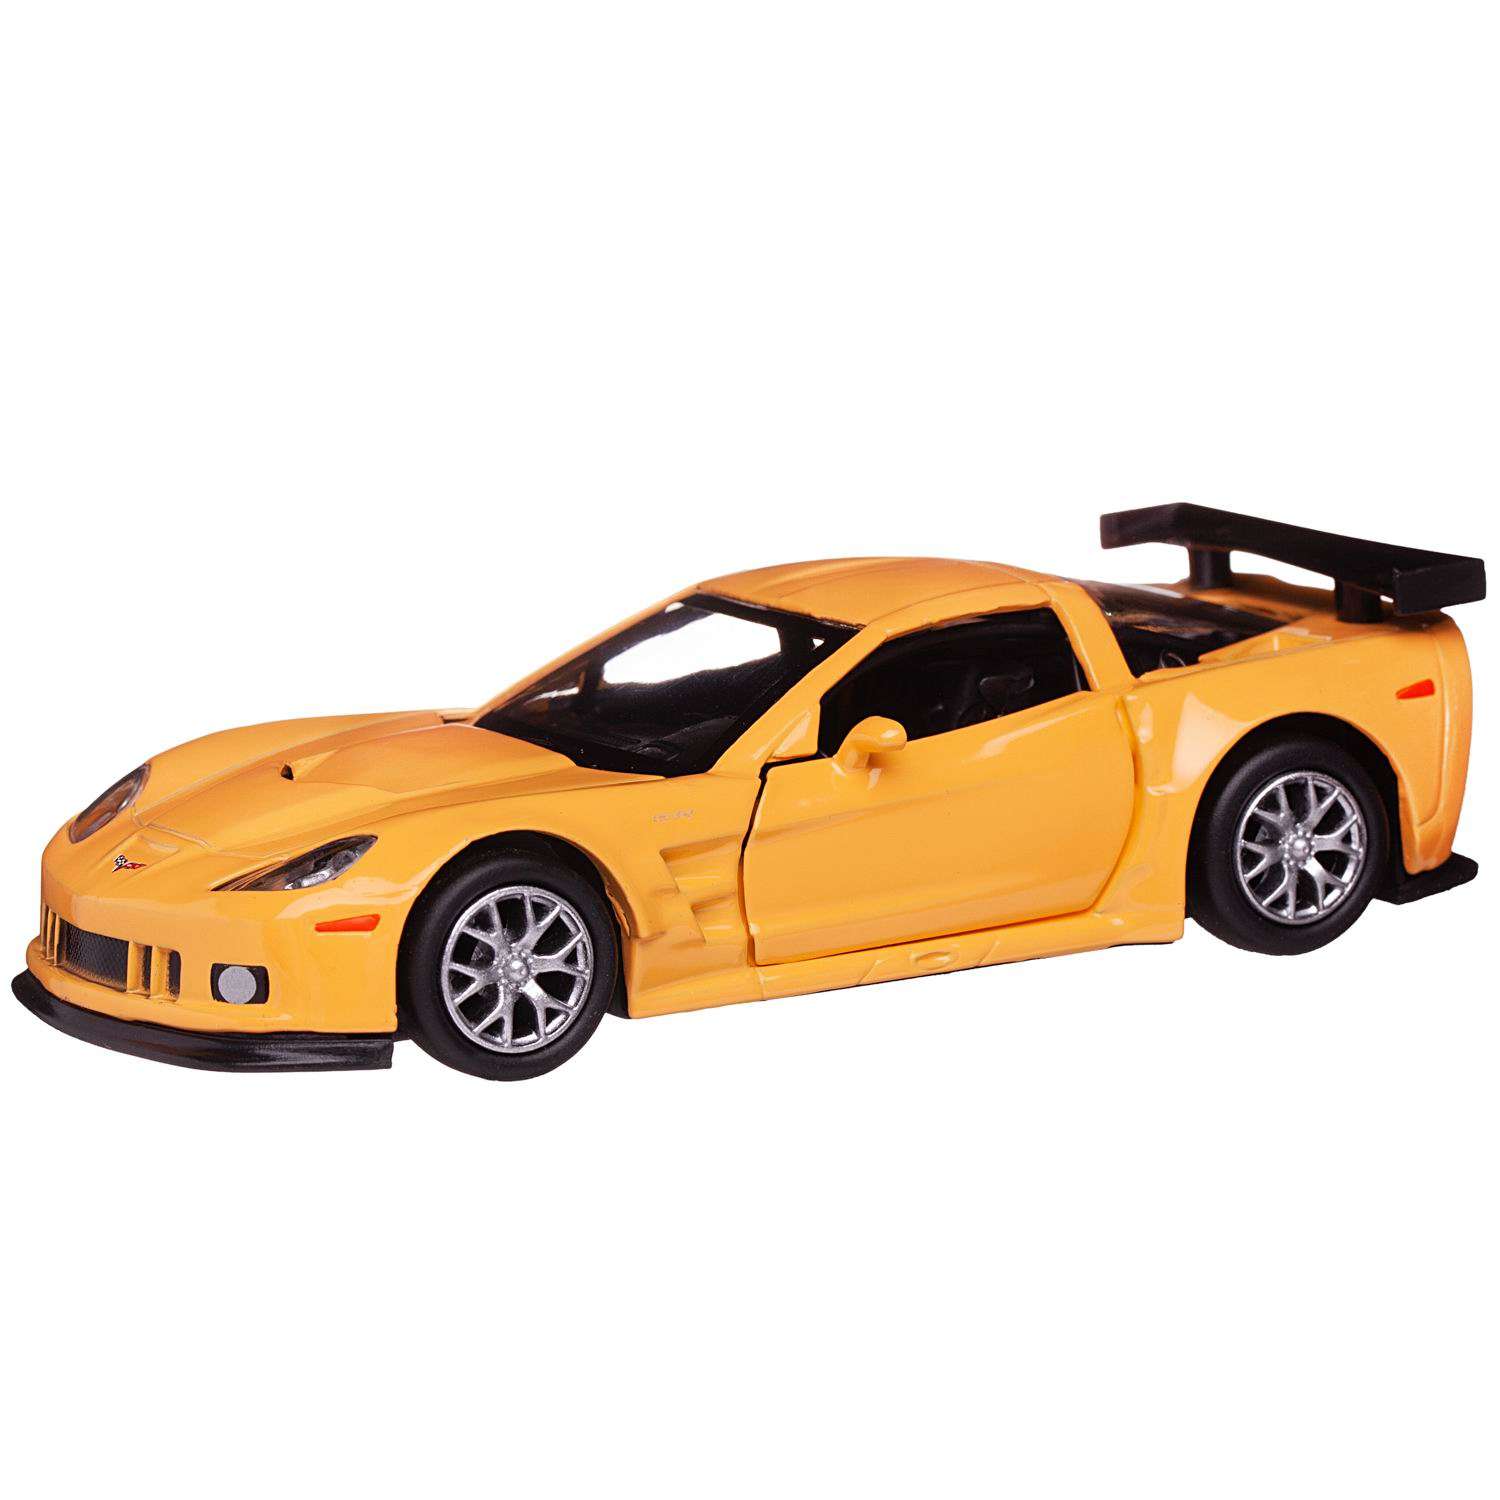 Машина металлическая Uni-Fortune Chevrolet Corvette C6 R желтый цвет двери открываются 554003-YL - фото 6